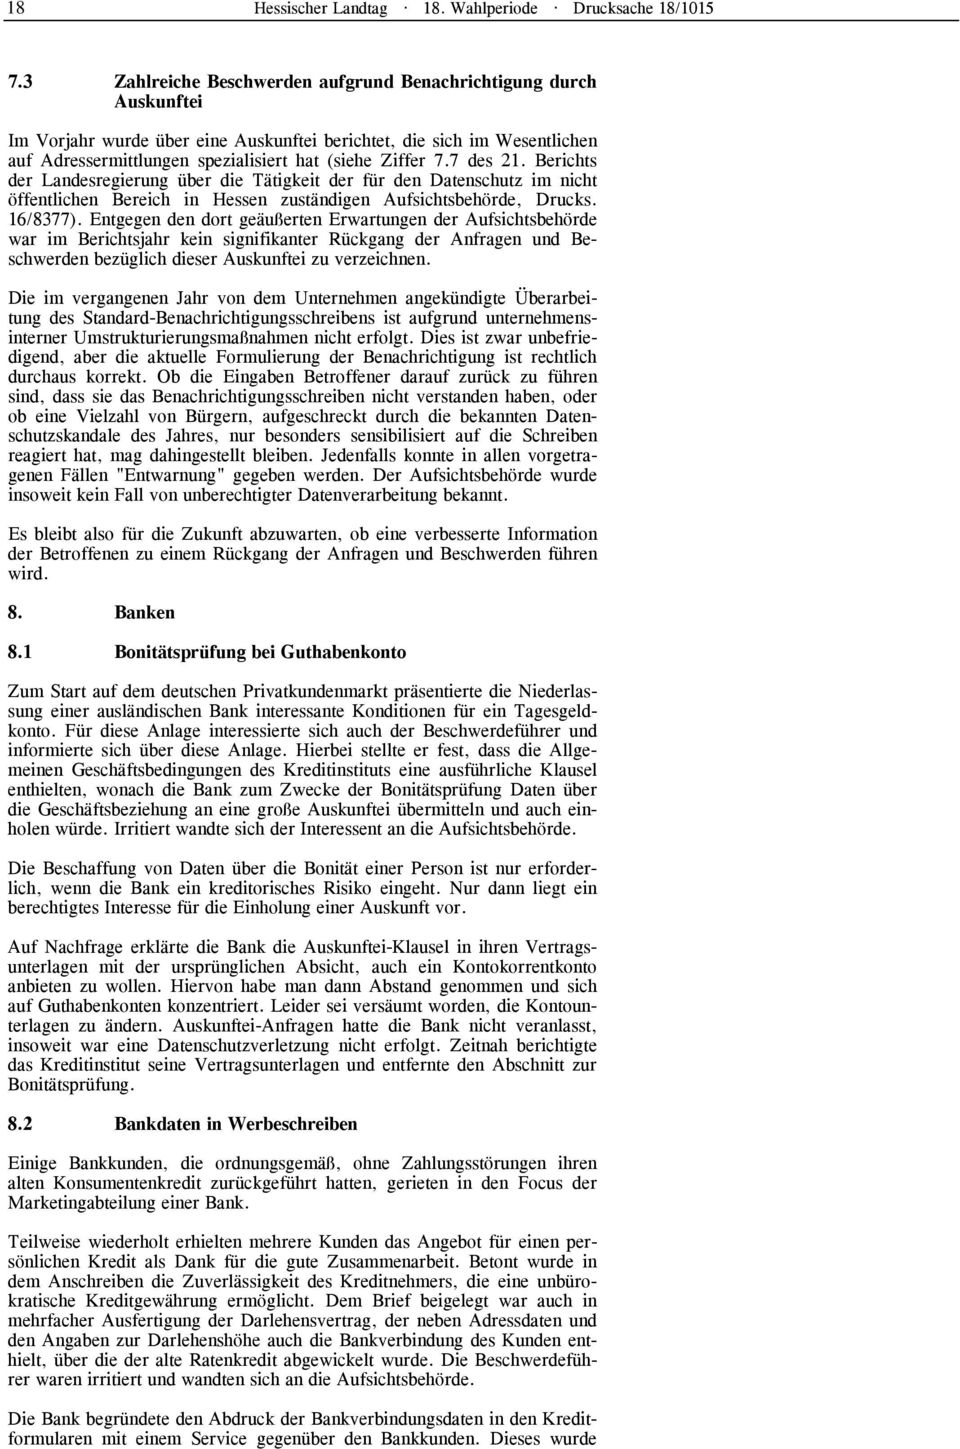 7 des 21. Berichts der Landesregierung über die Tätigkeit der für den Datenschutz im nicht öffentlichen Bereich in Hessen zuständigen Aufsichtsbehörde, Drucks. 16/8377).